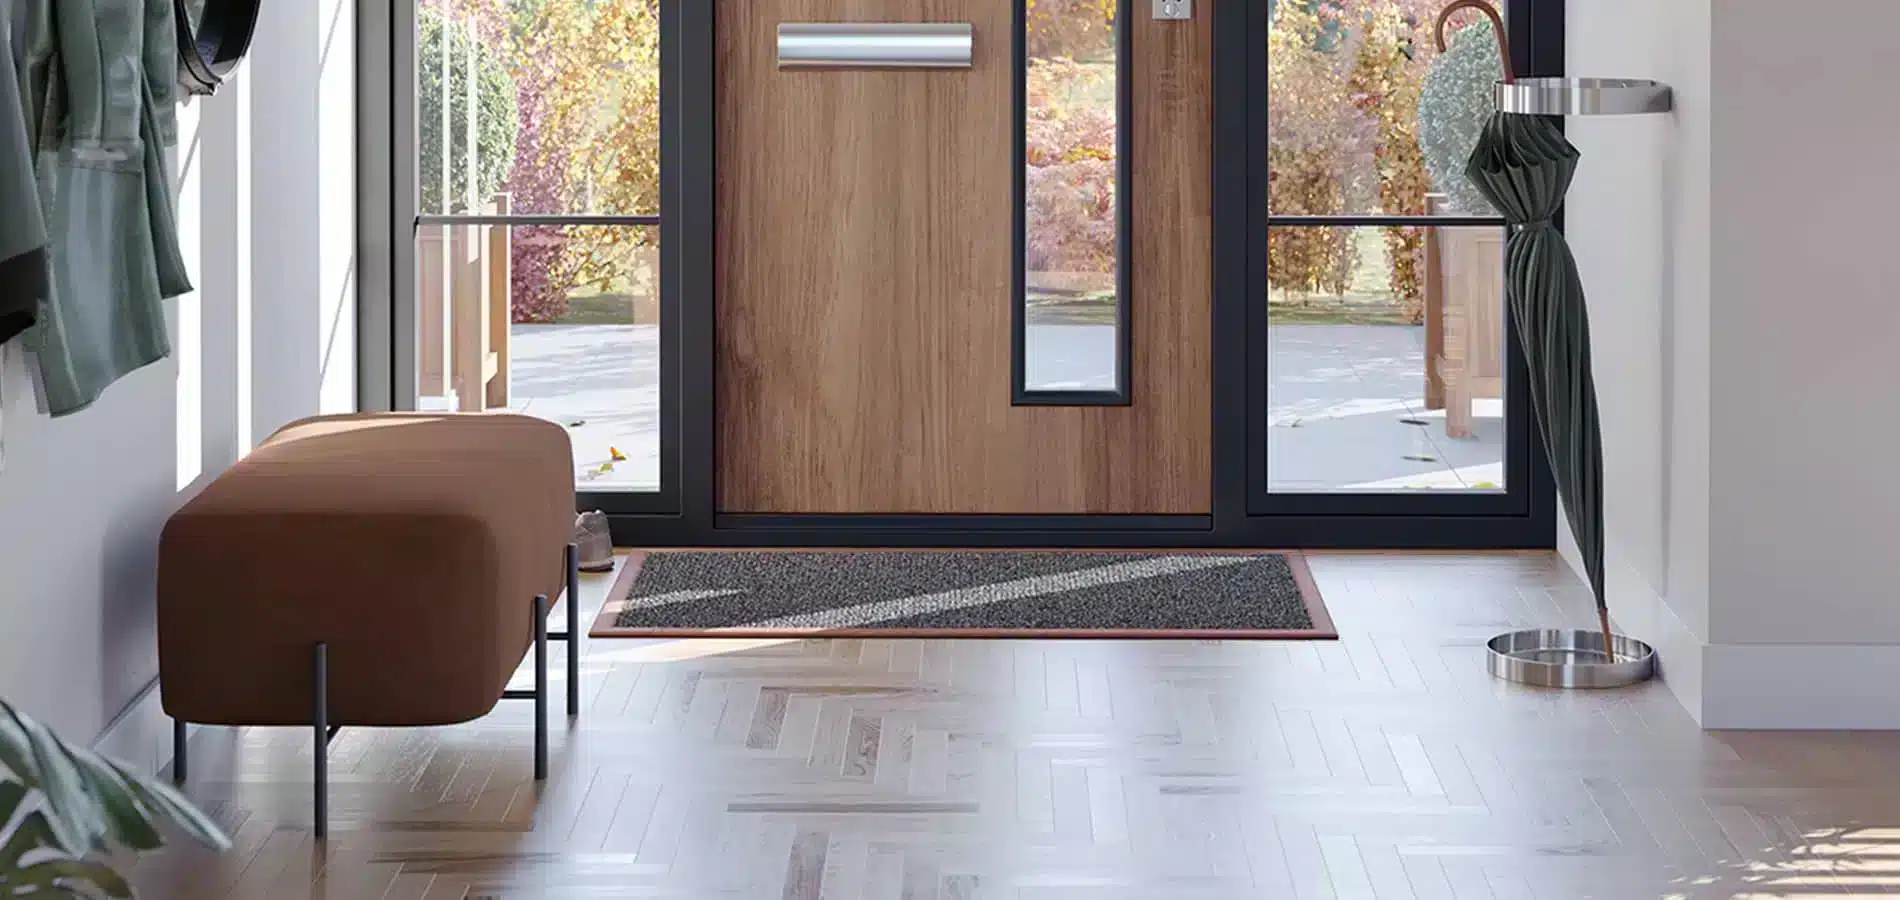 Thickness Luxury Large Door Mats Home Floor Welcome Mat for Indoor